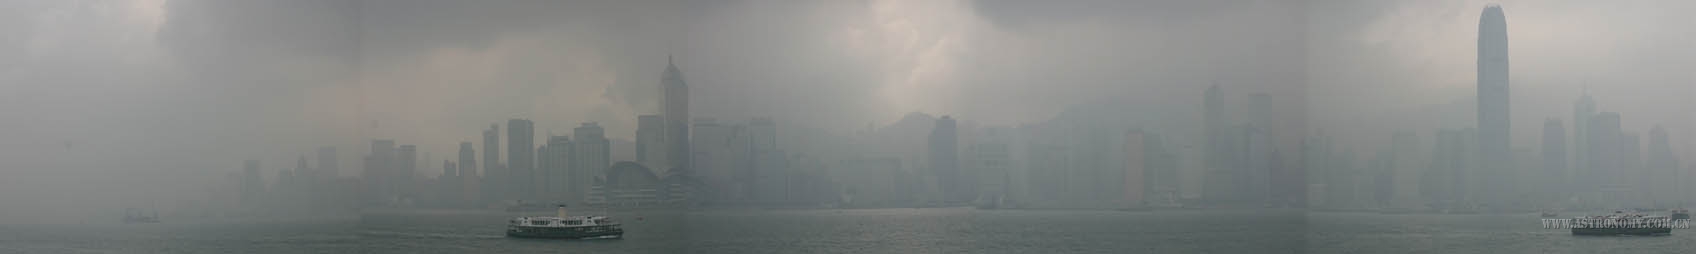 039_維港_空氣污染.jpg